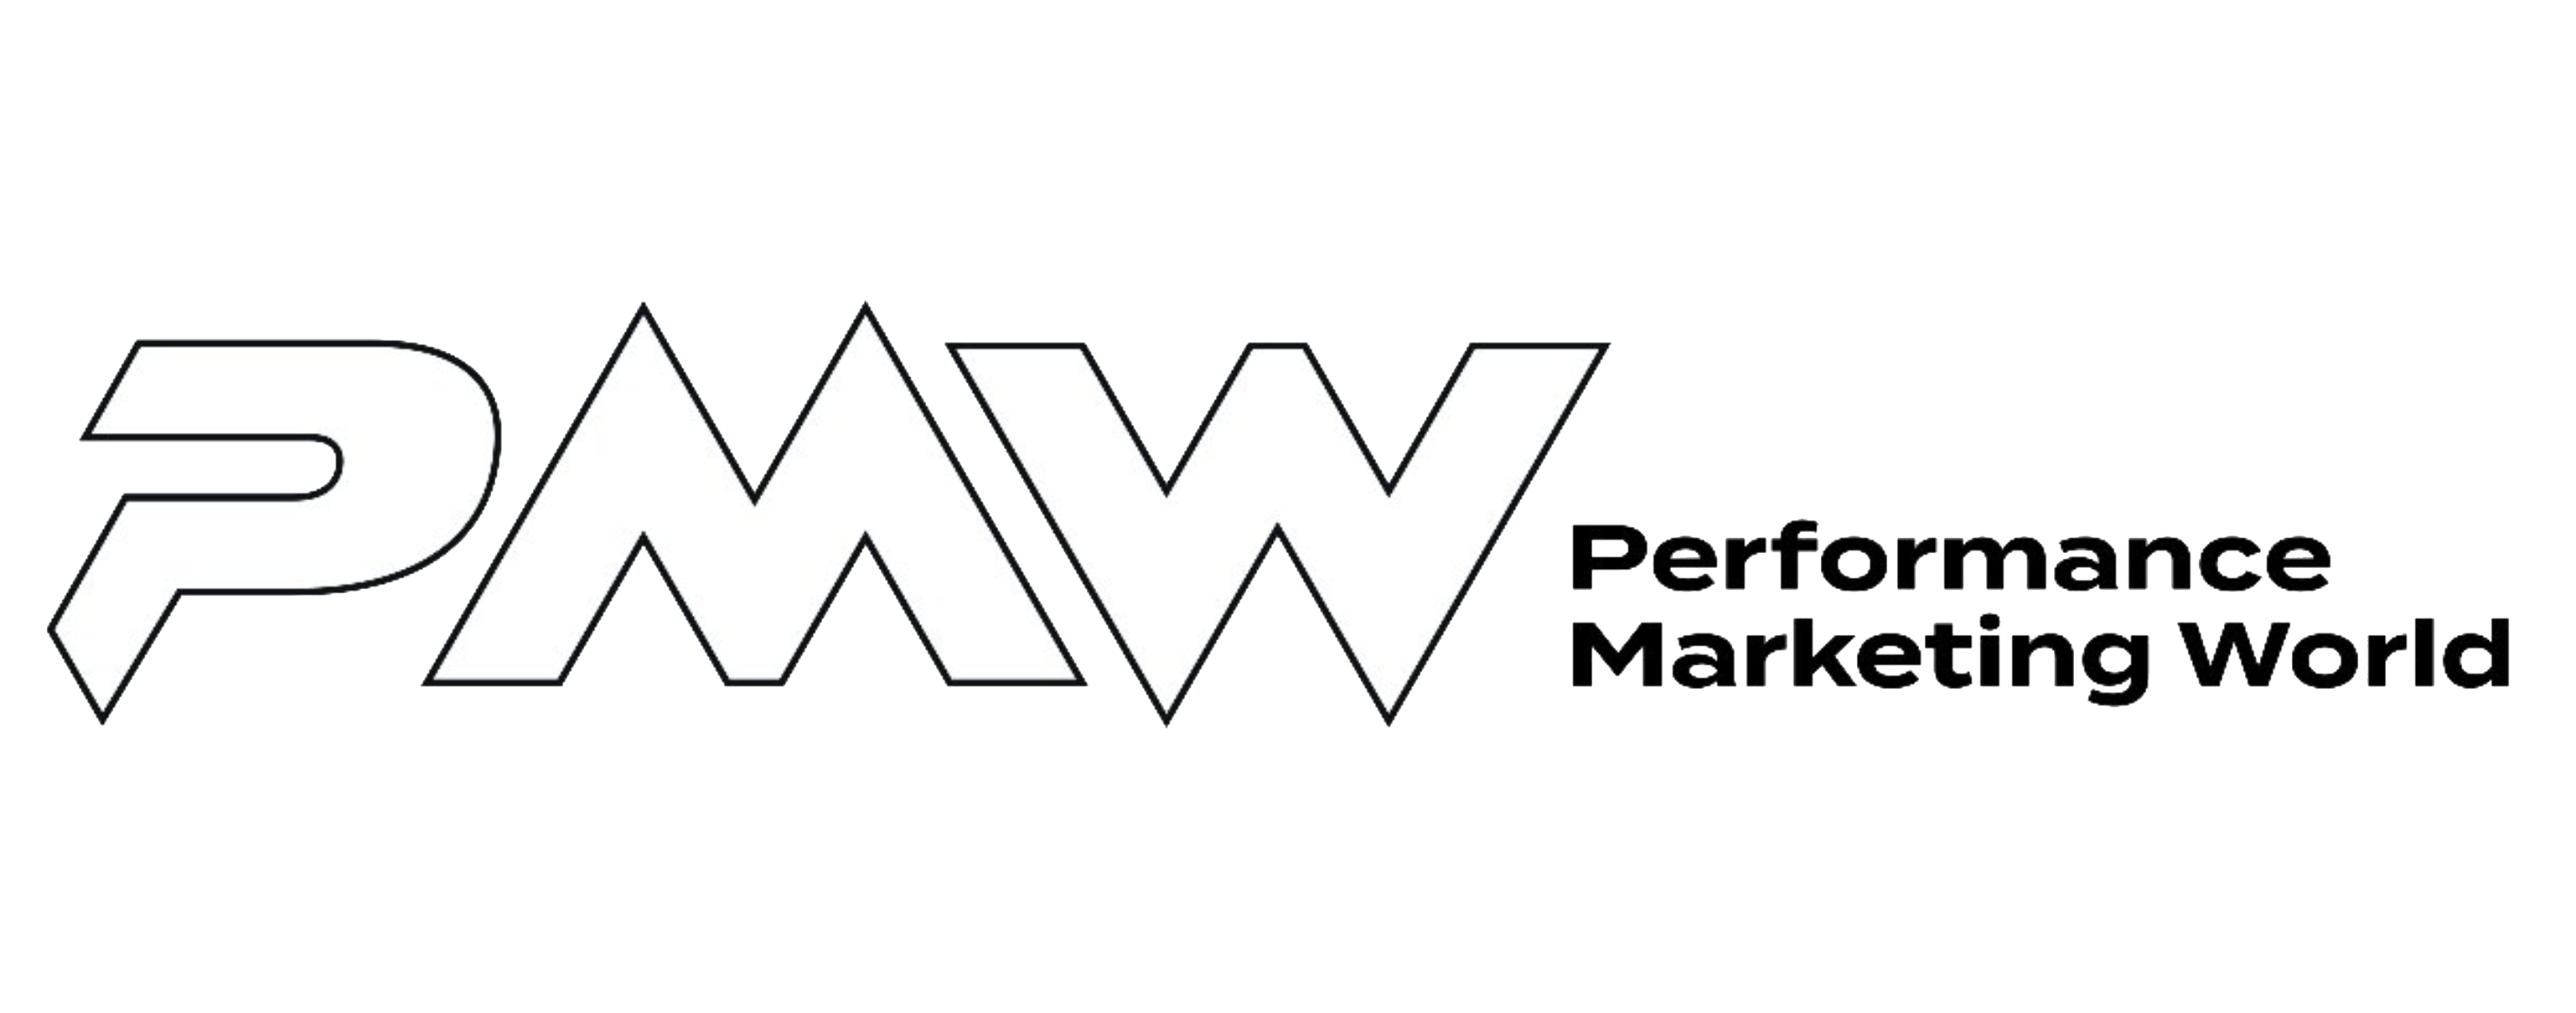 Performance Marketing World - Media Coverage Logo